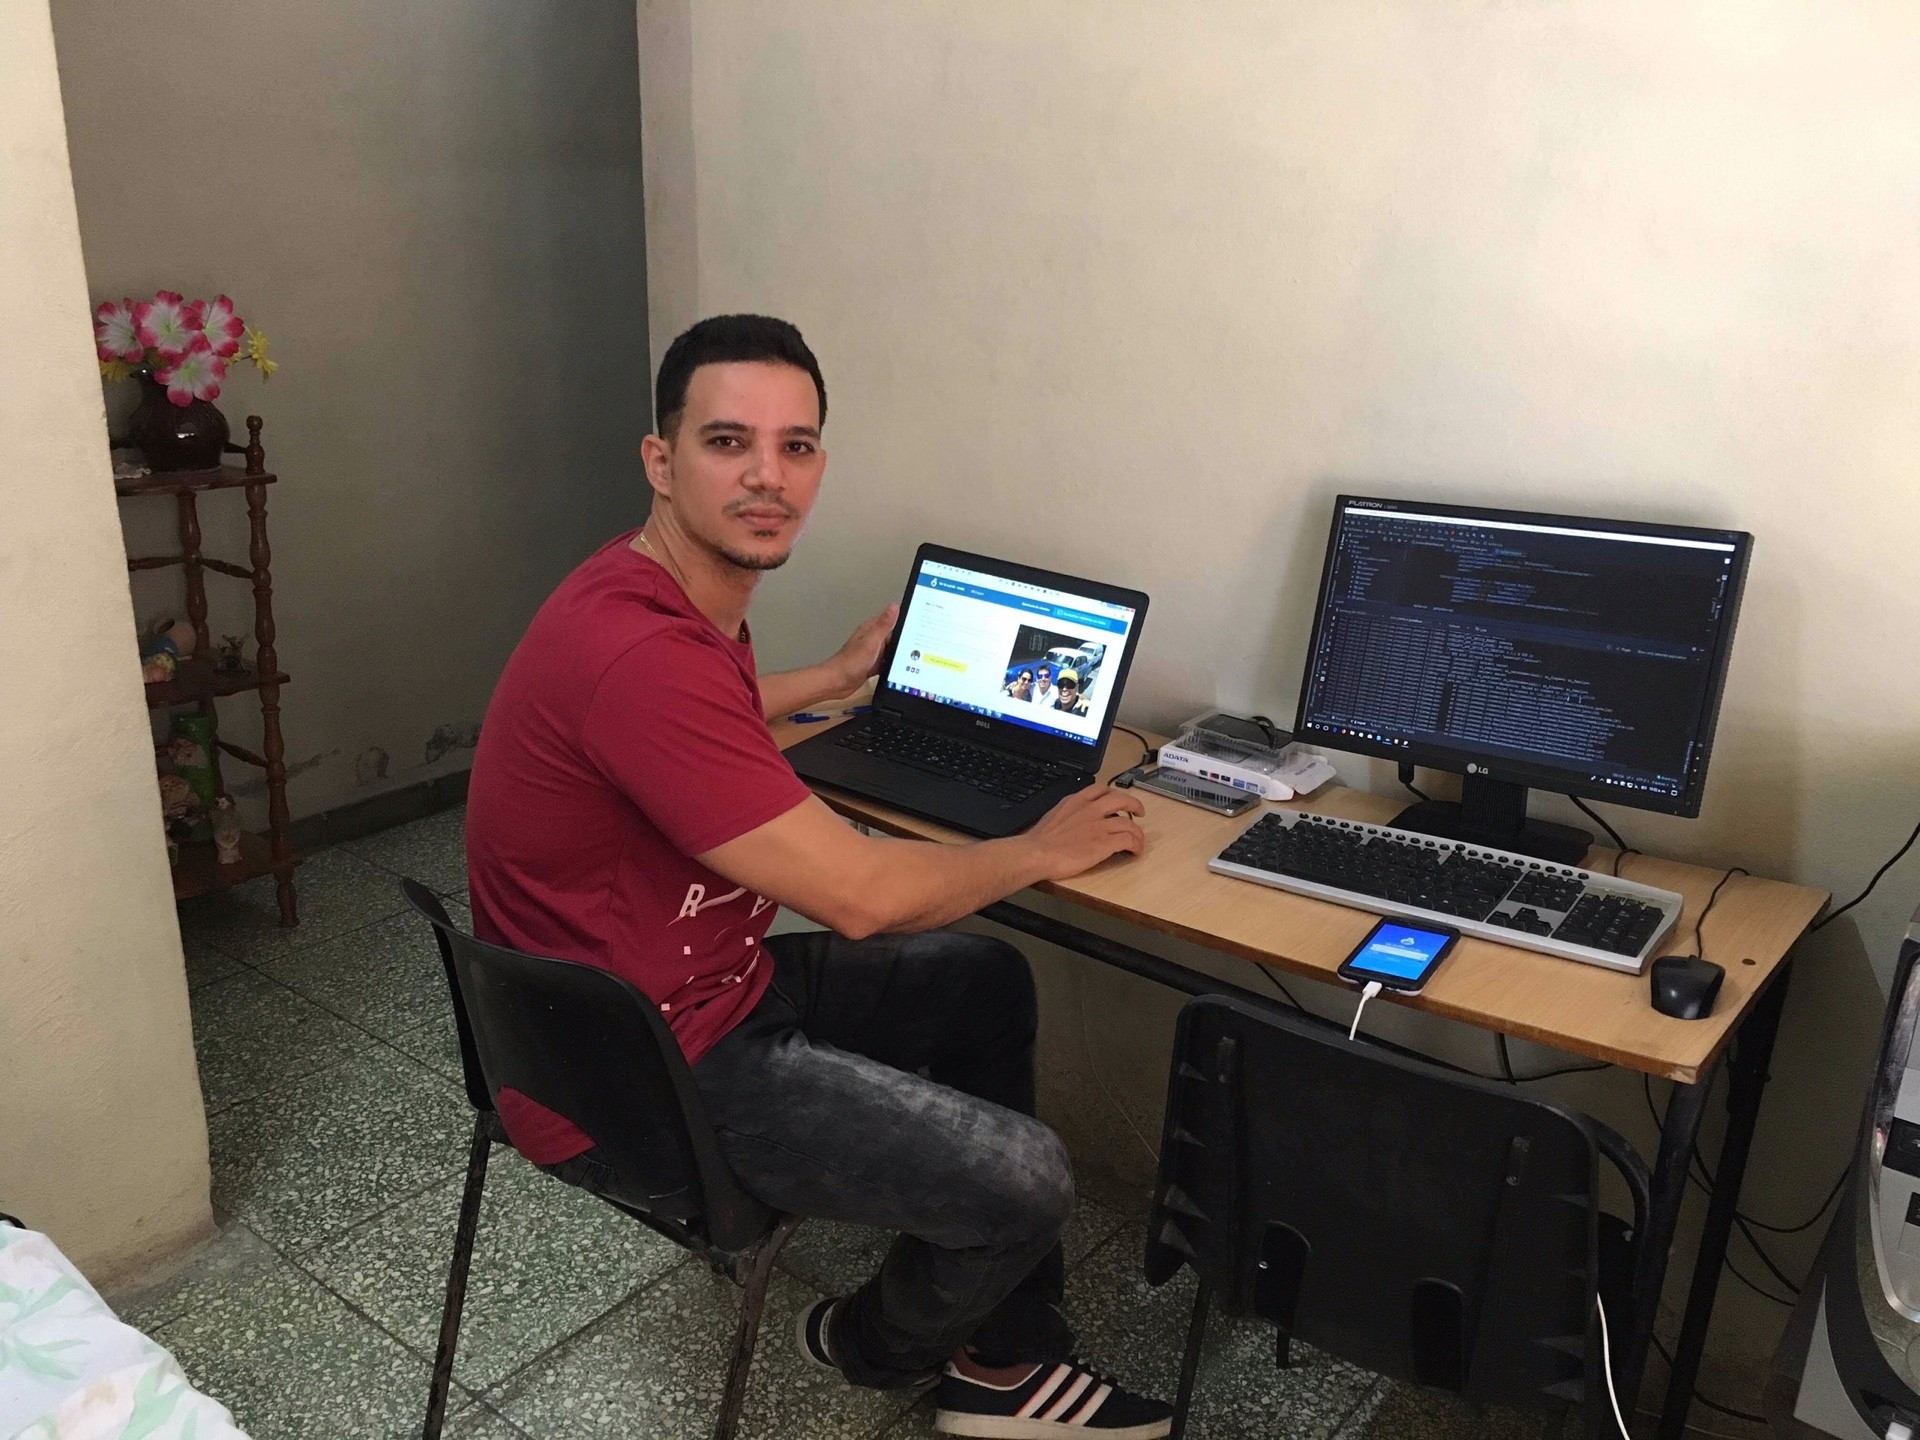 El desarrollador Martín Proenza, fundador de YoTeLlevoCuba, frente su laptop en su oficina en Granma, Cuba.